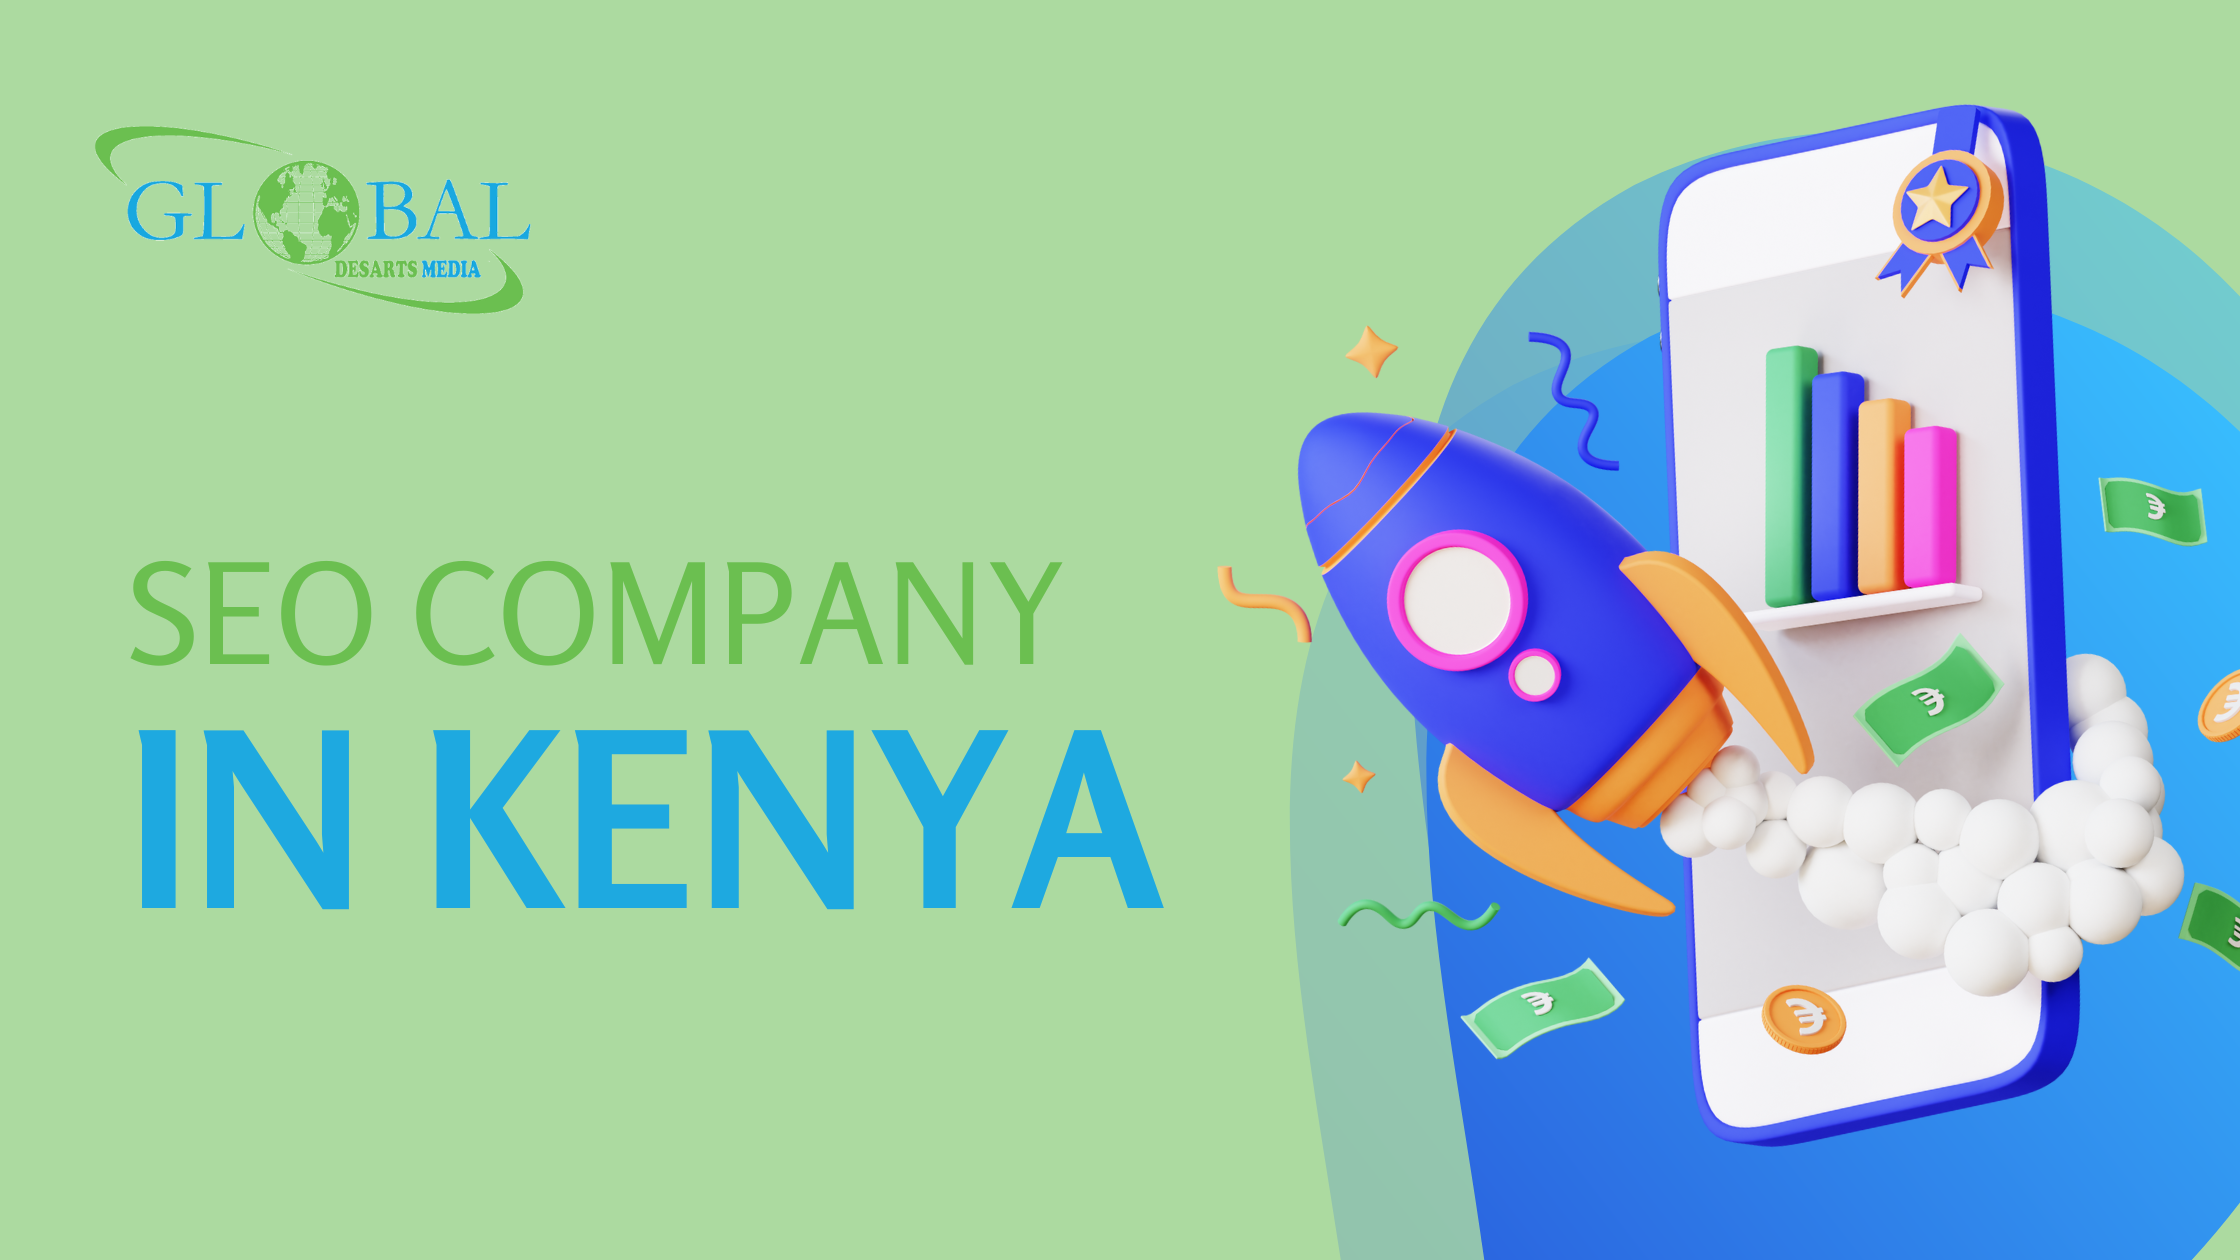 SEO Company In Kenya